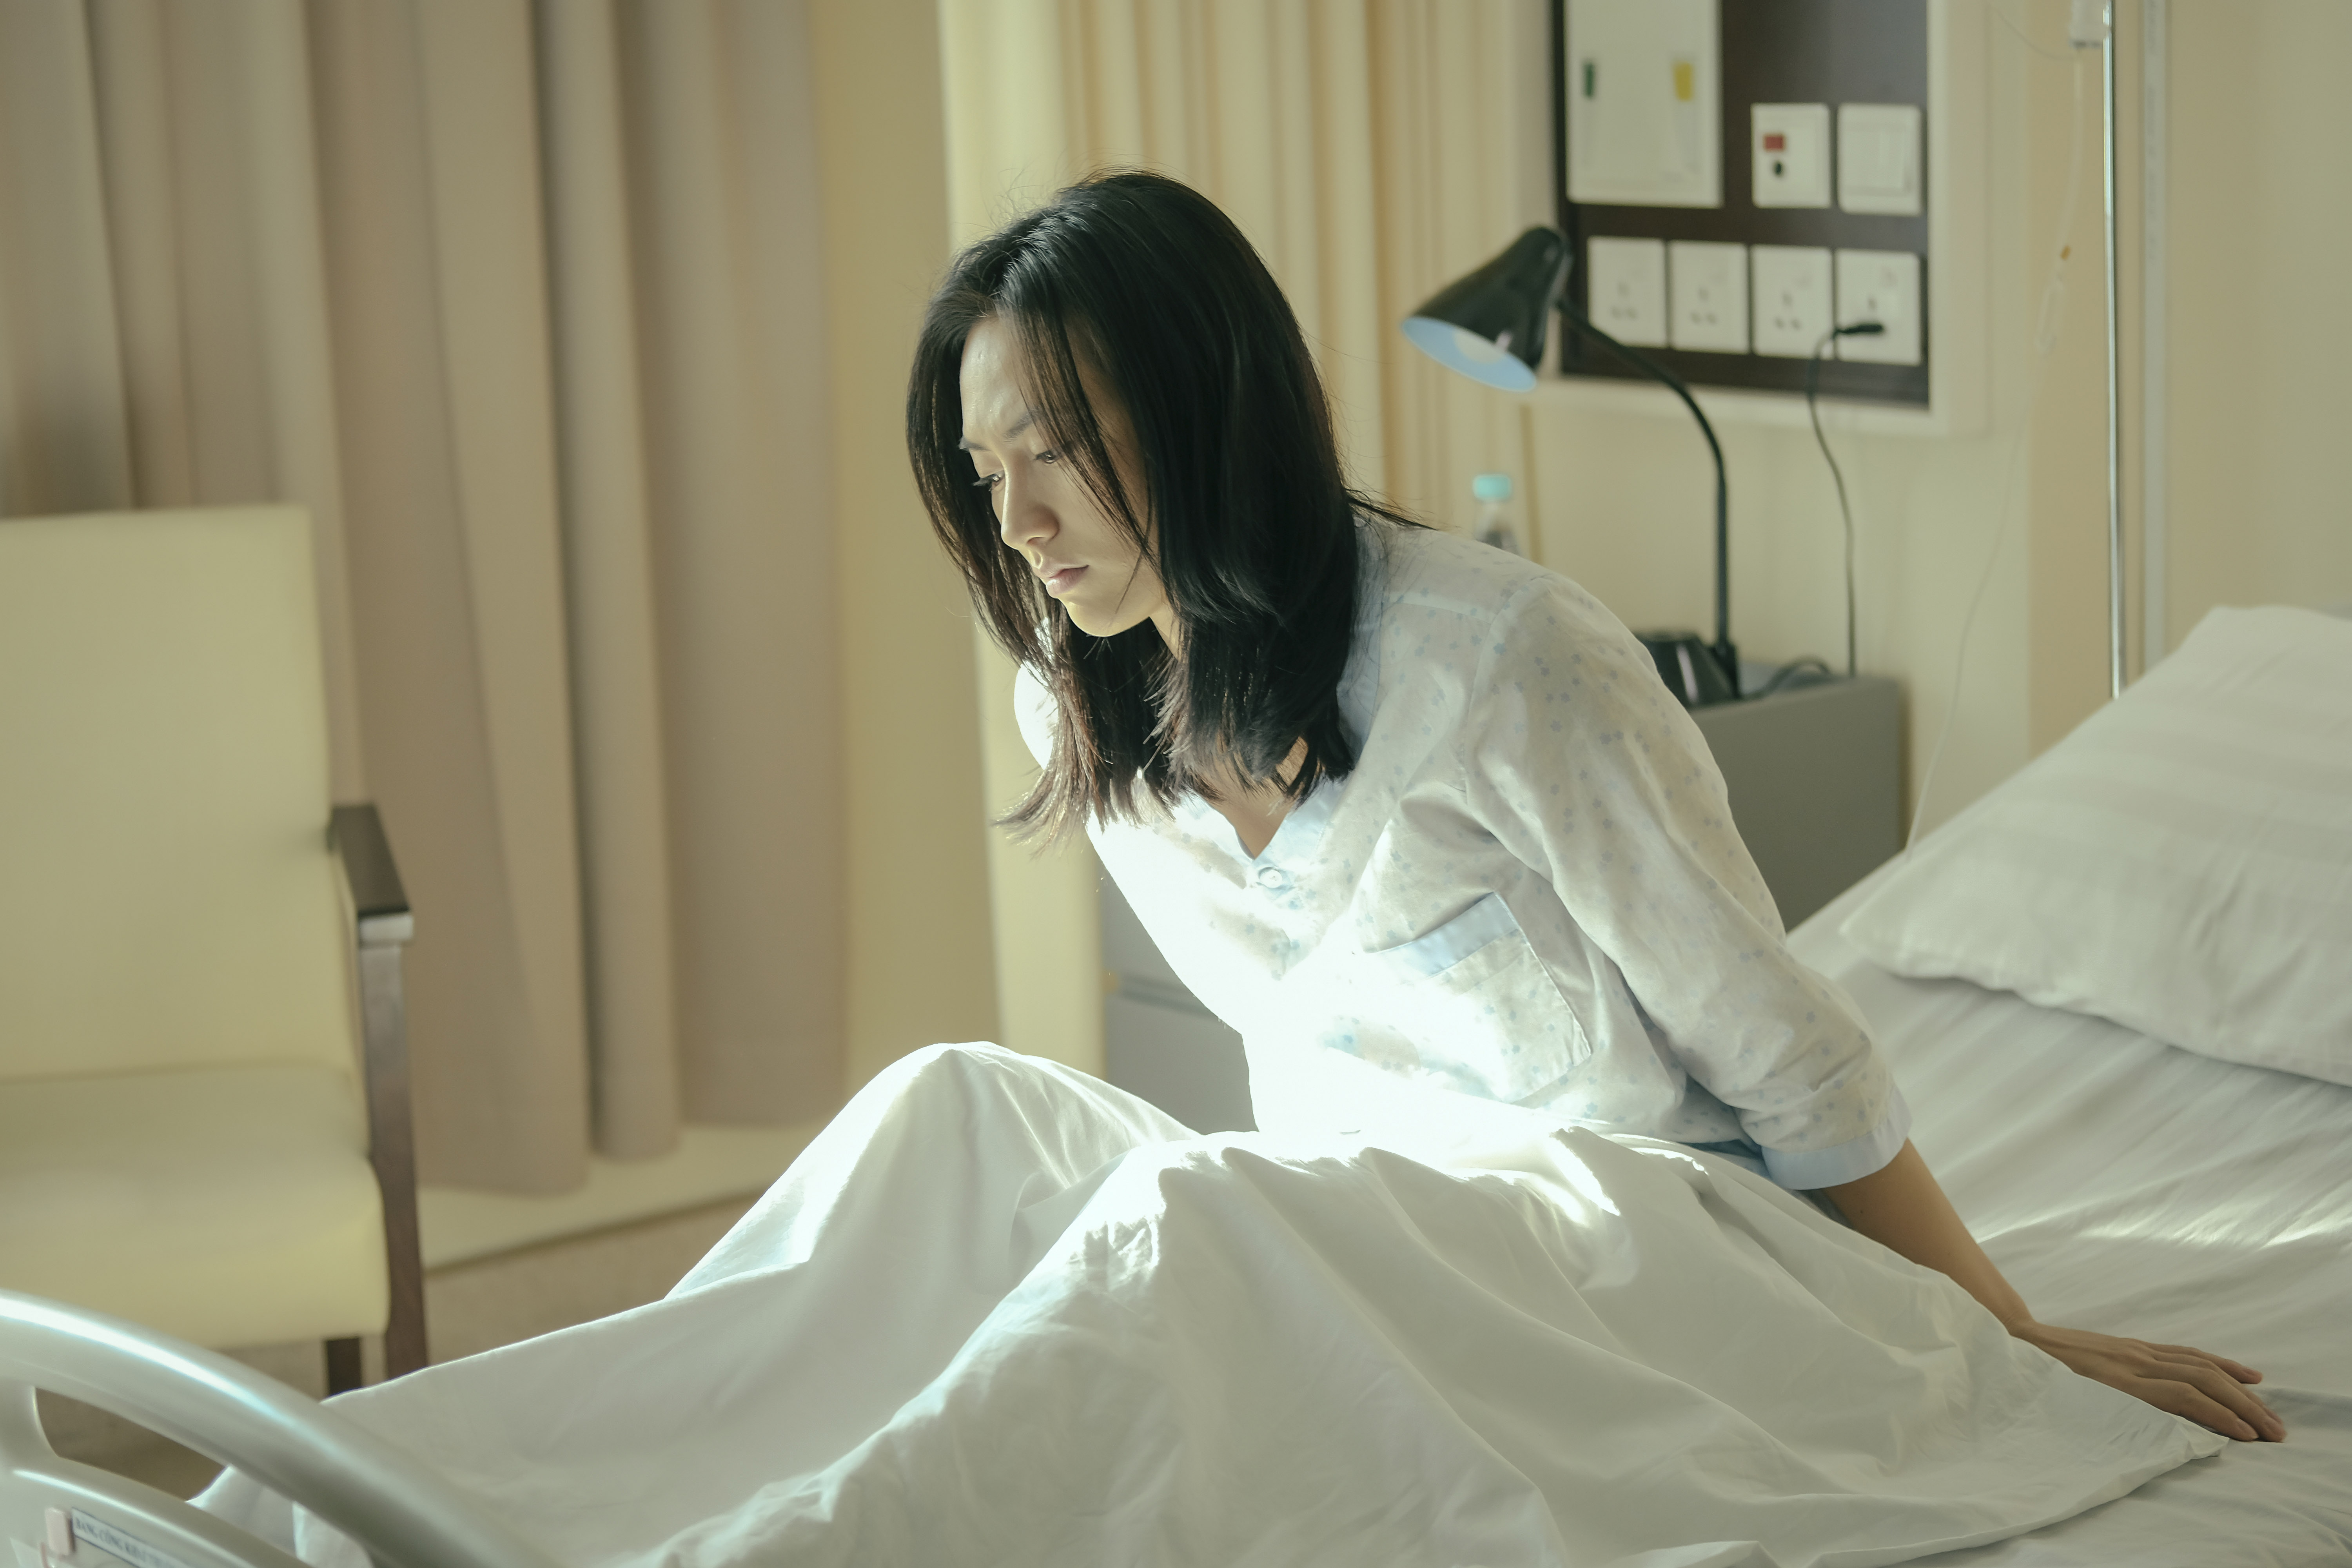 phim trinh thám Bằng Chứng Vô Hình diễn viên Phương Anh Đào trong bệnh viện